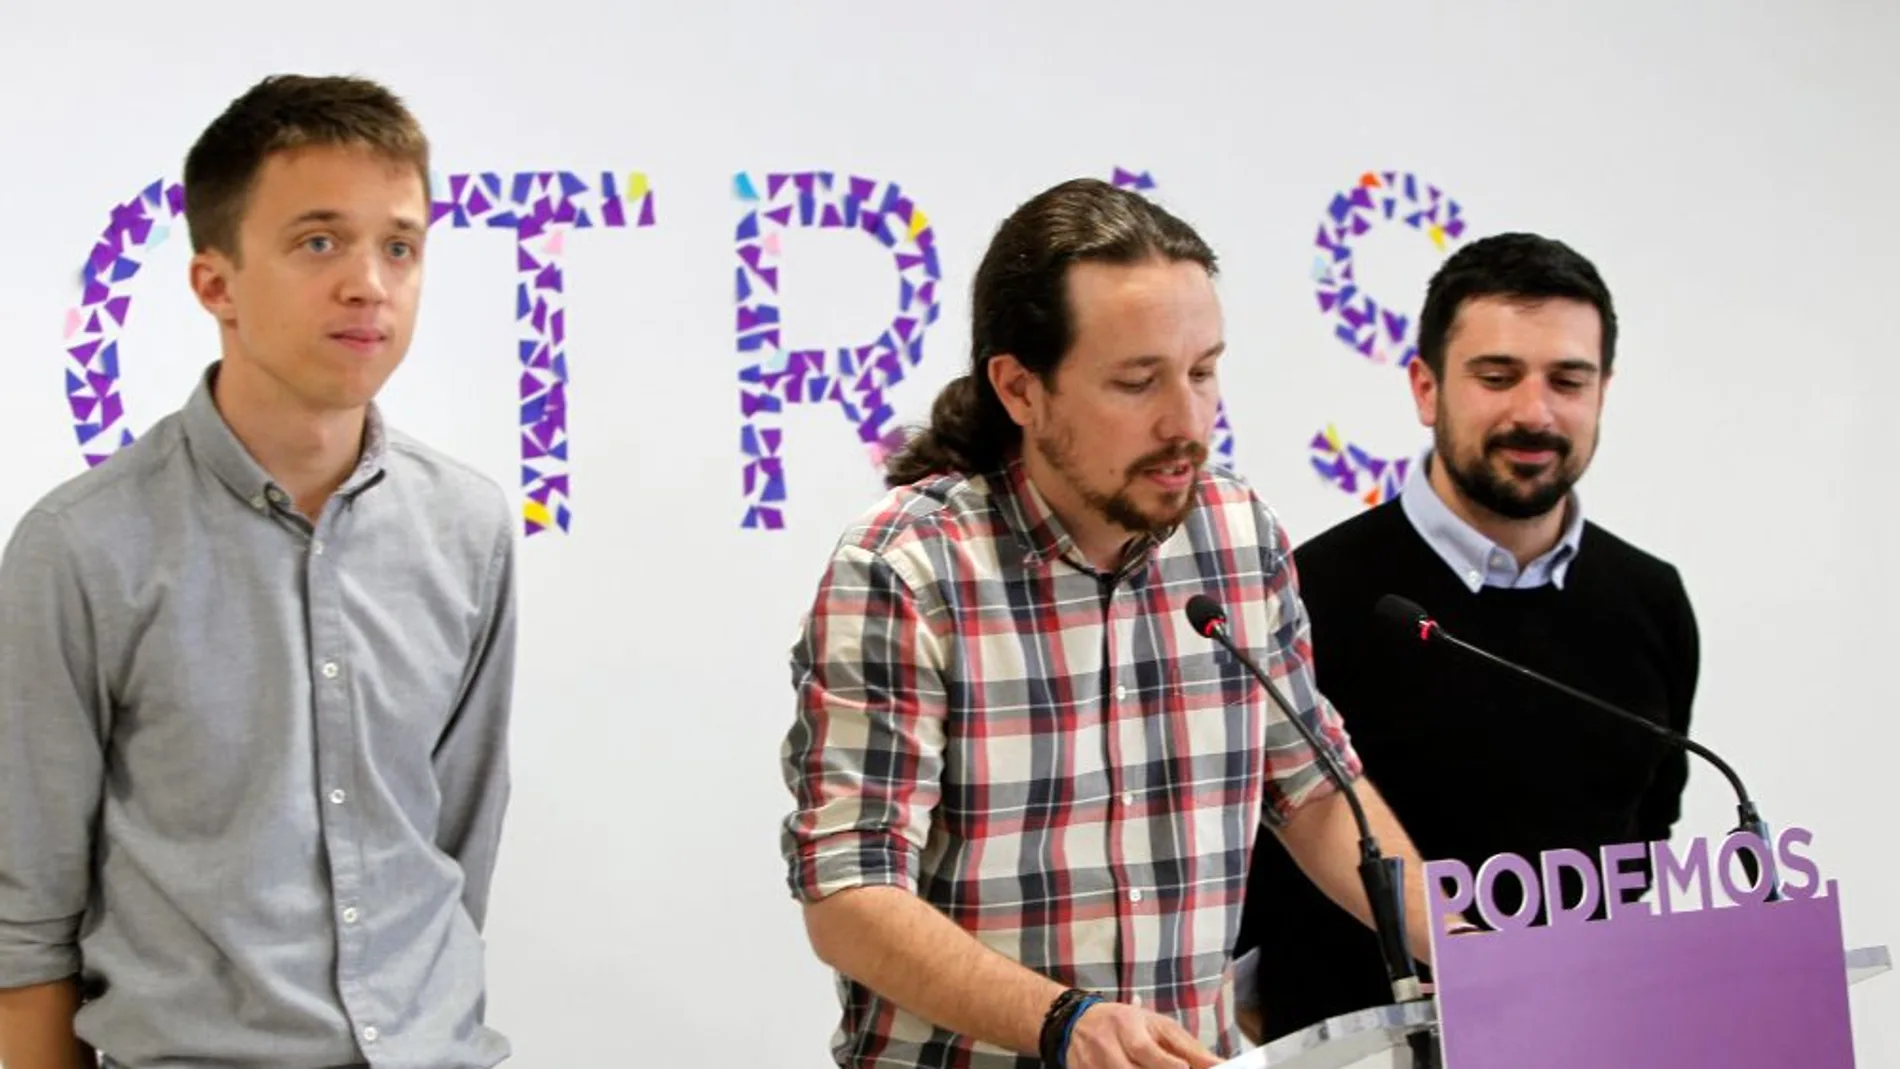 laSexta Noticias 20:00 (19-04-18) Iglesias: "Confío en Íñigo Errejón", y lo respalda como candidato